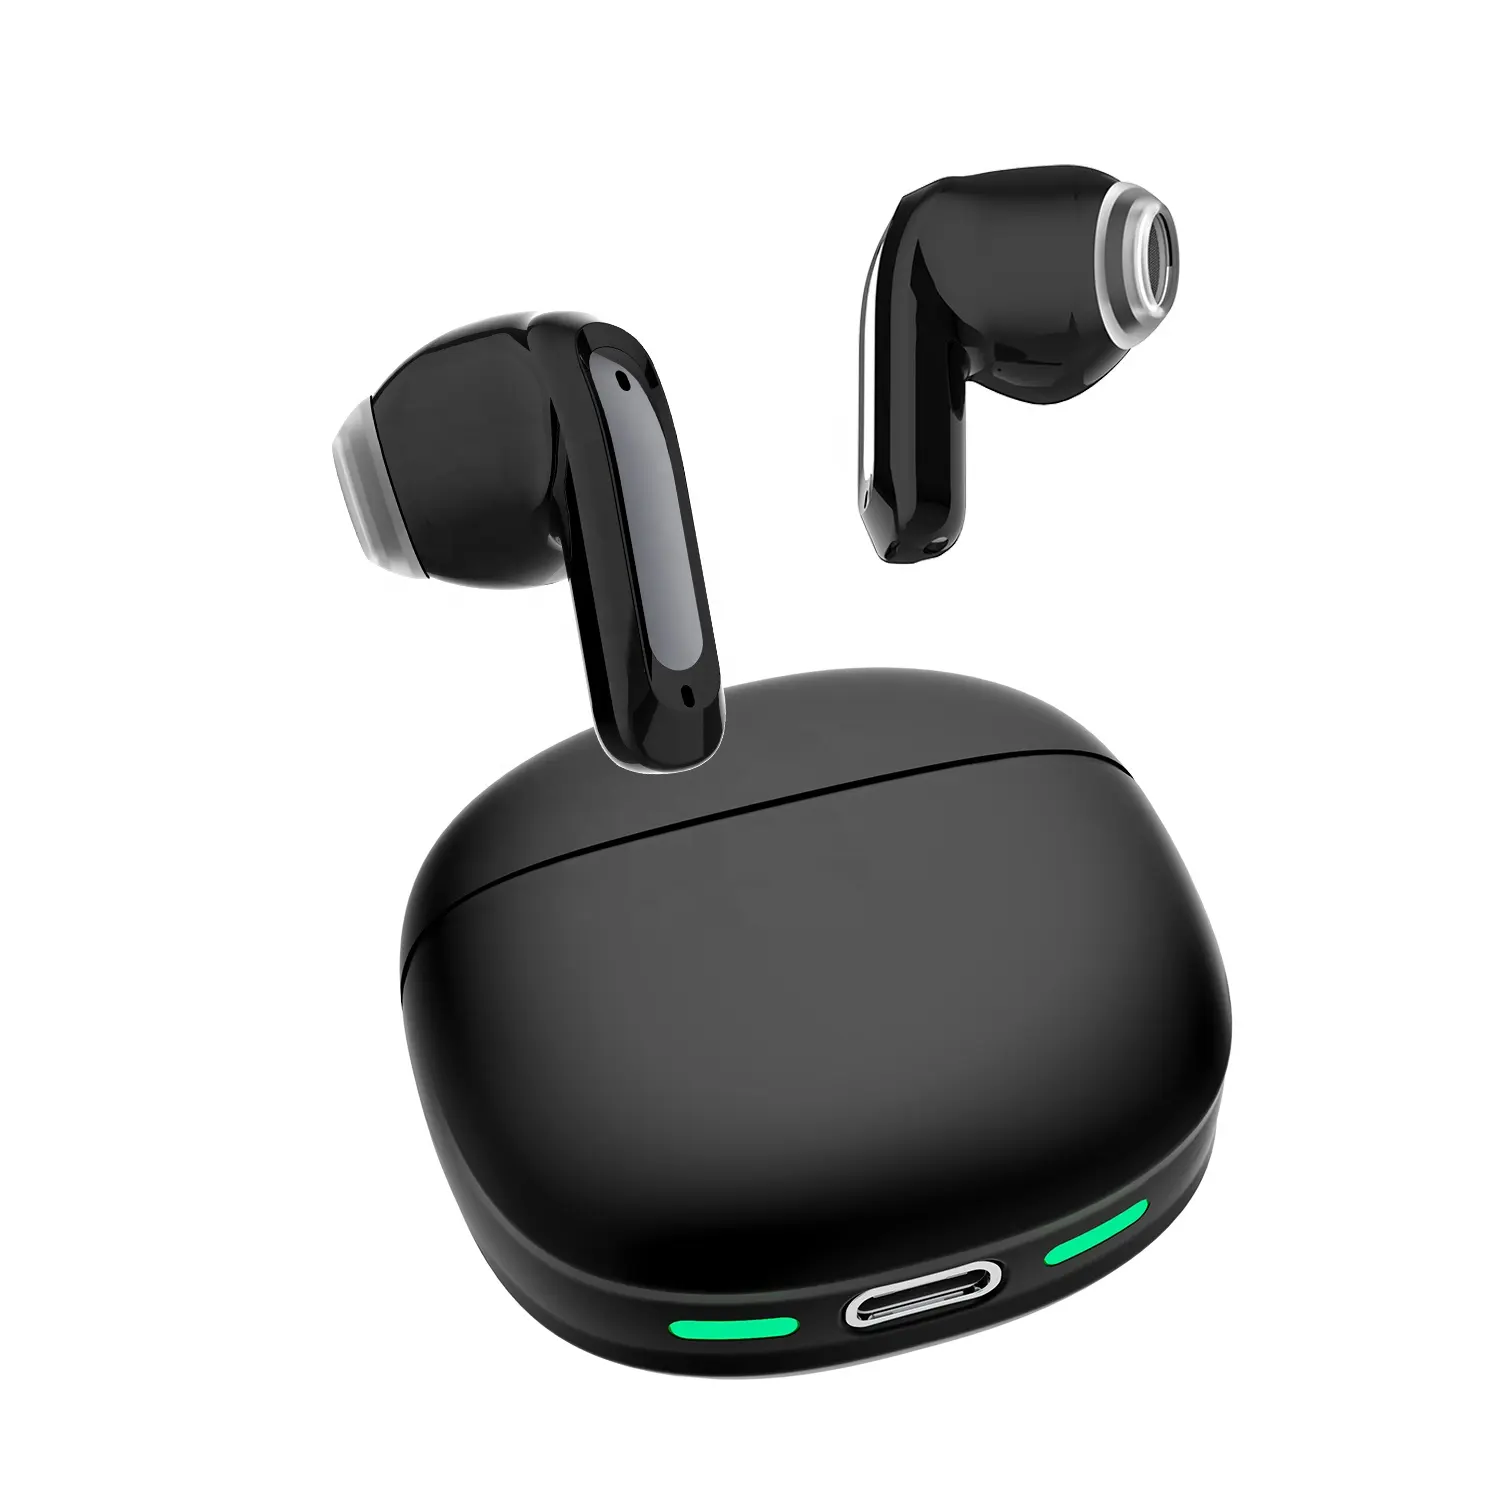 Mini Air buds wireless earphones white black earbuds in ear headphones